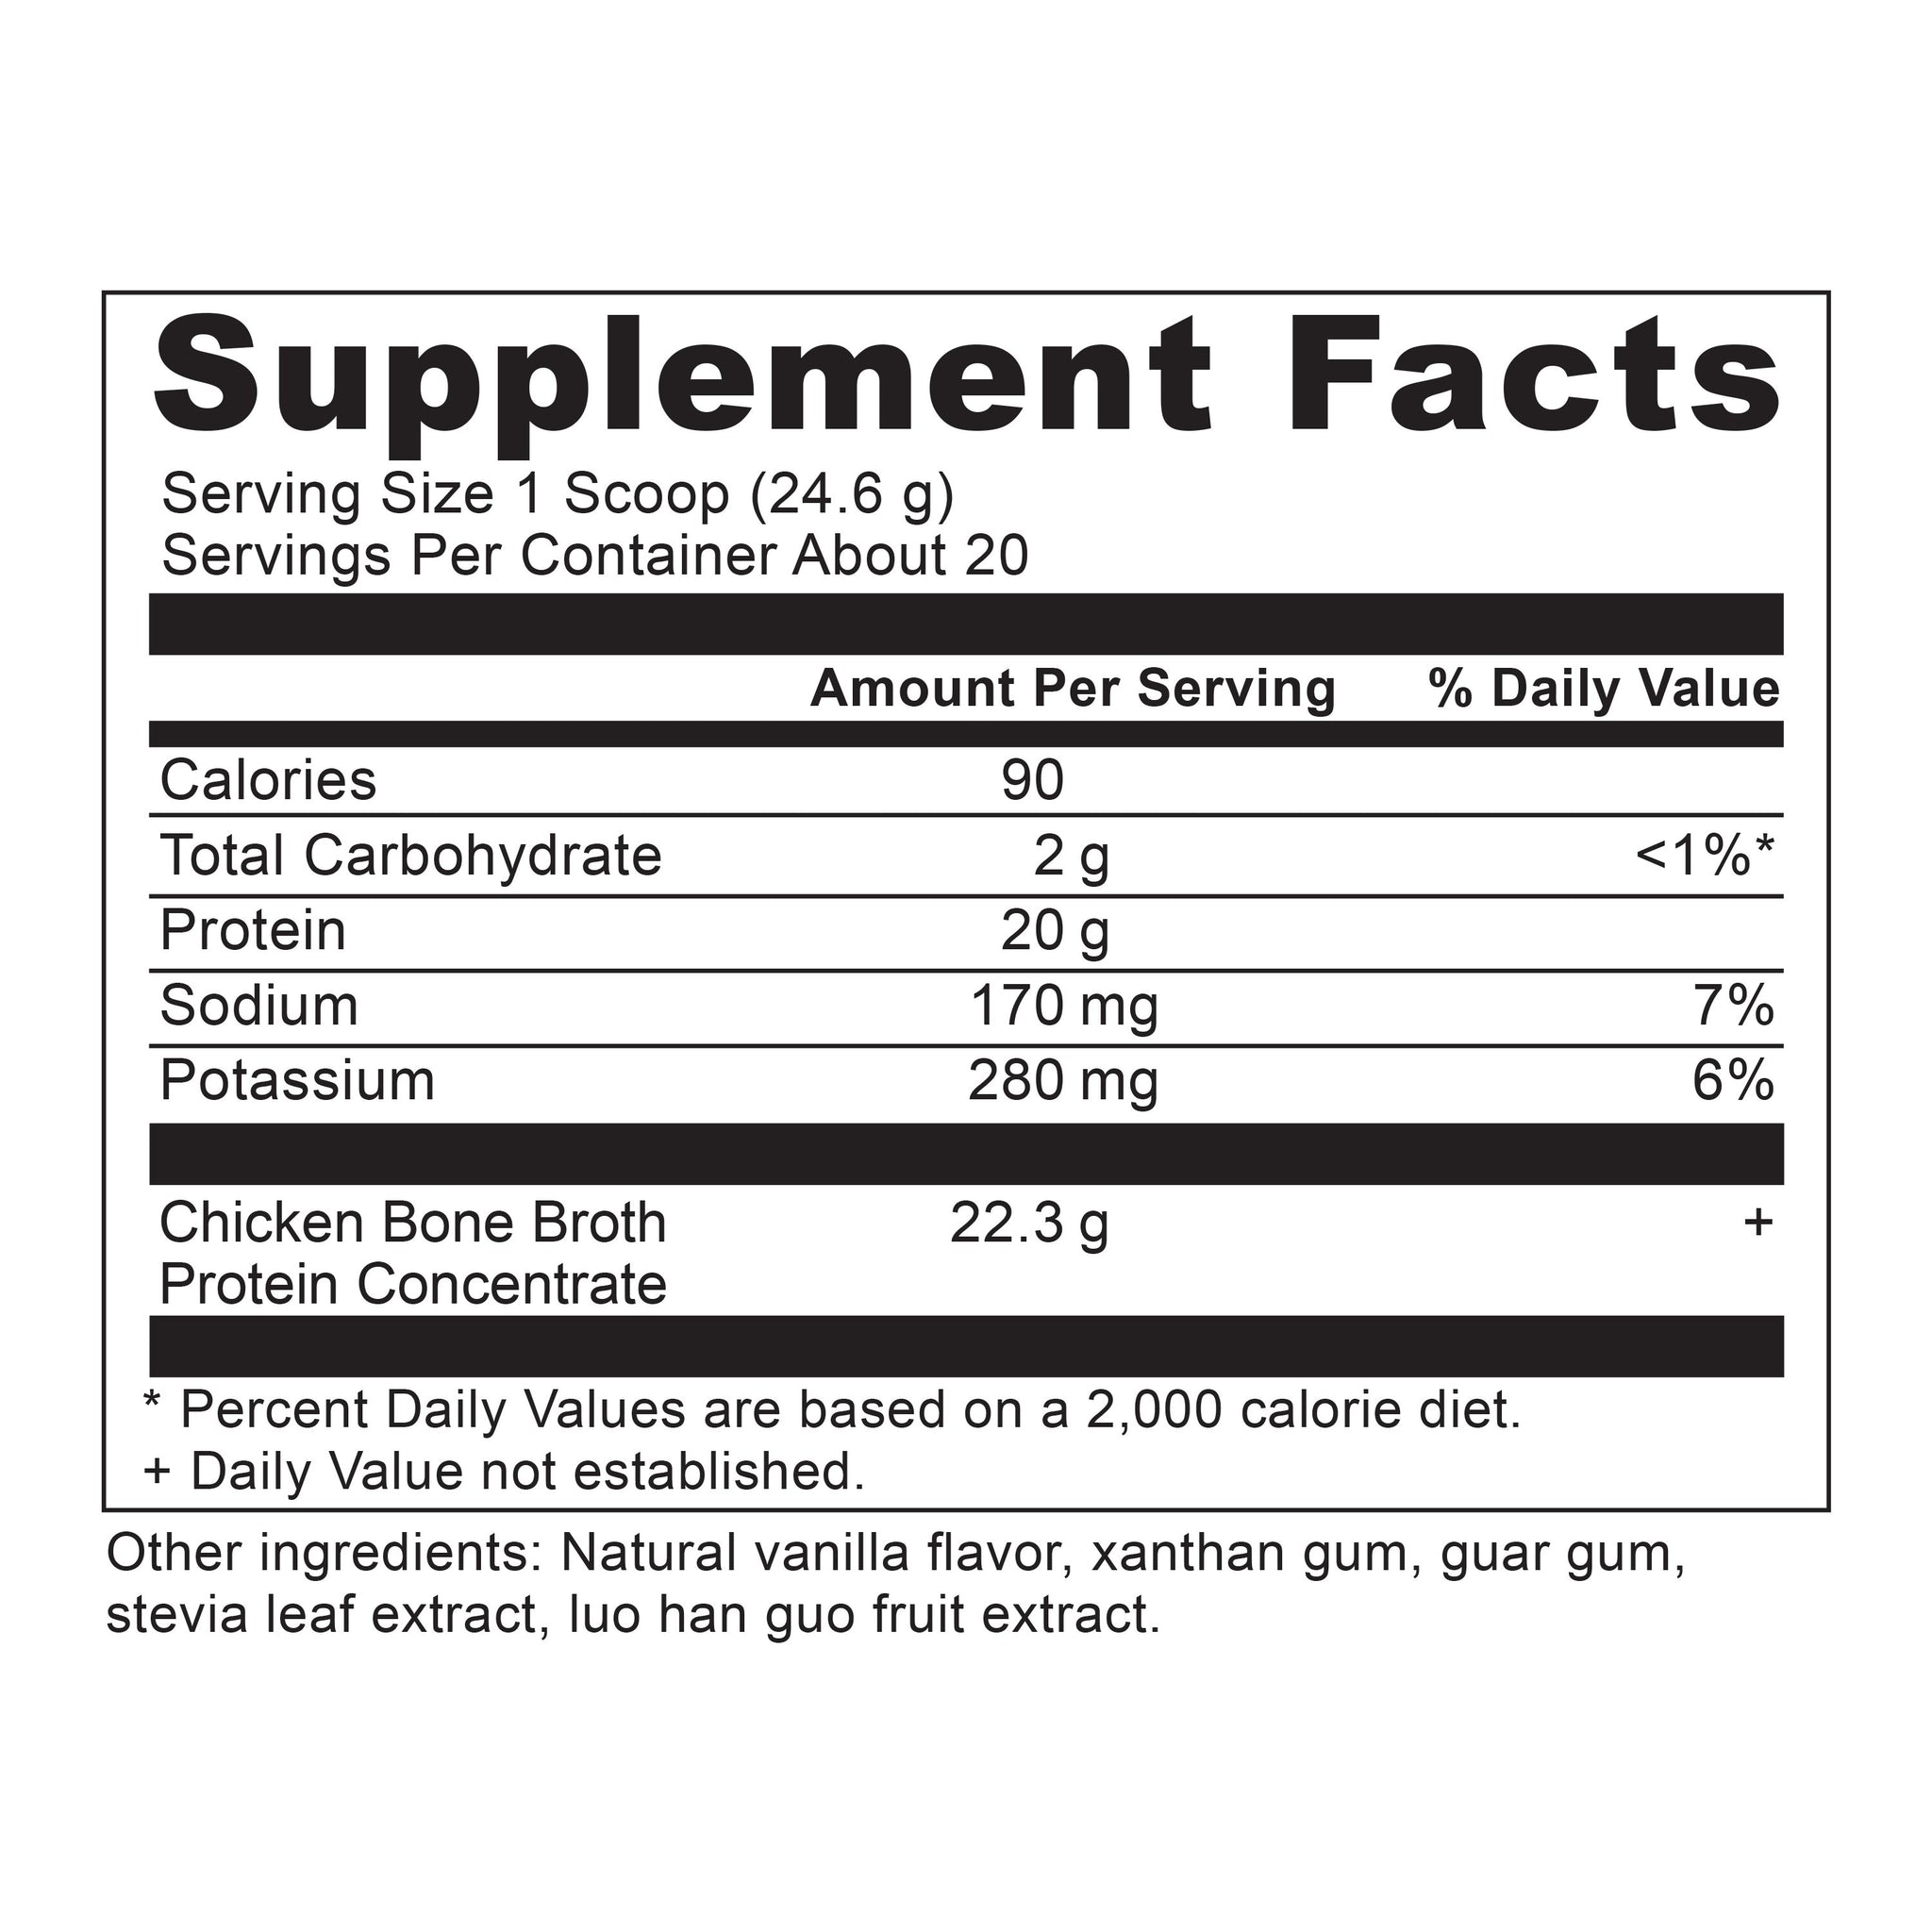 bone broth protein vanilla supplement label